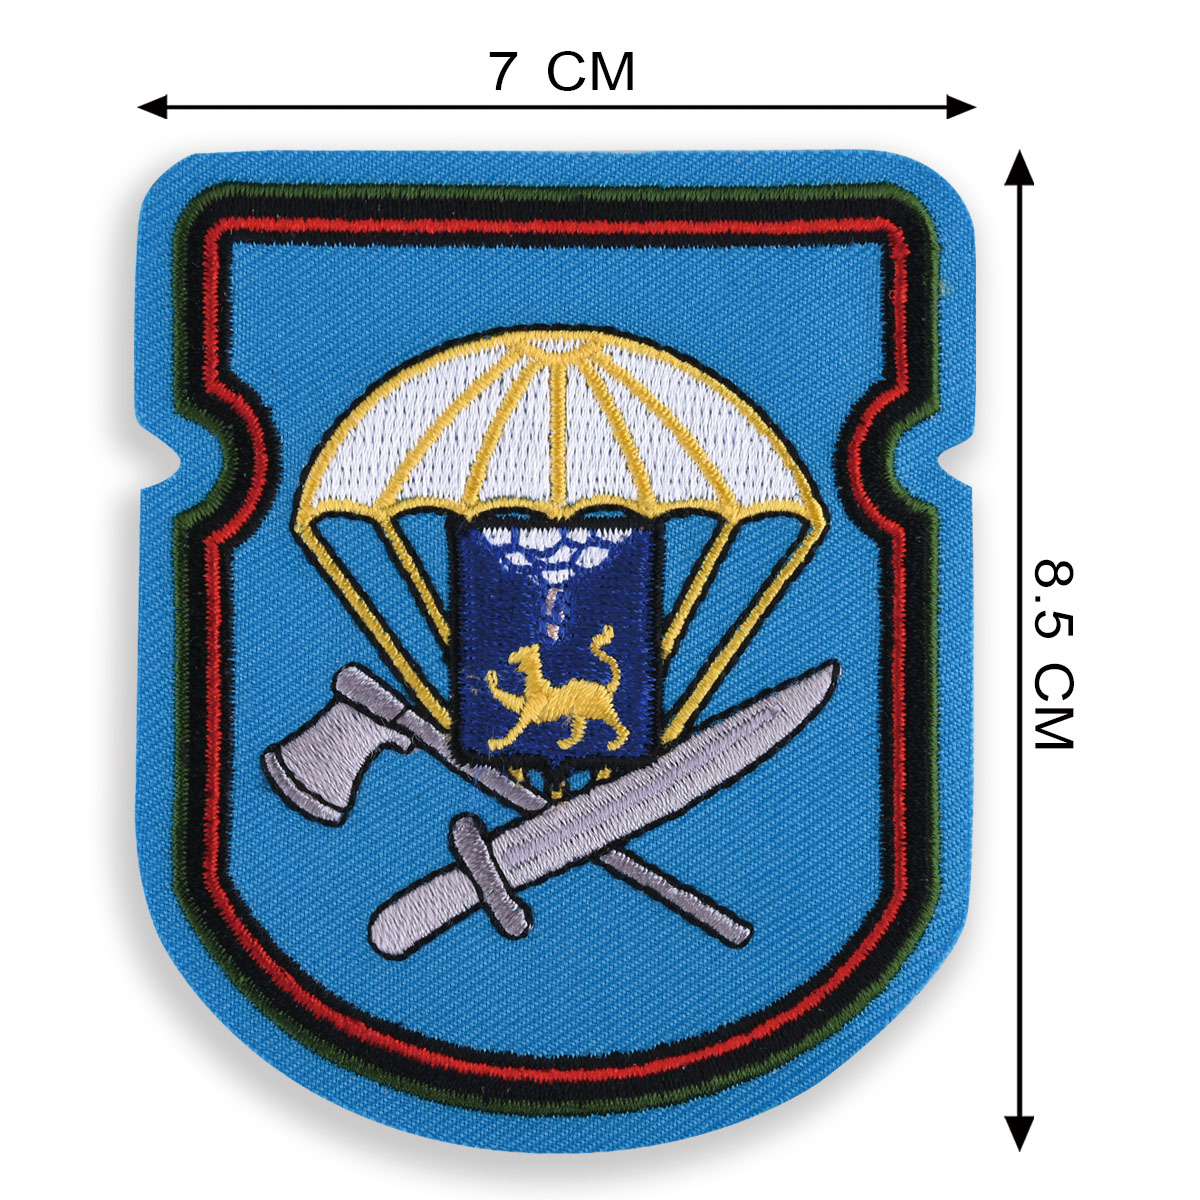 Нашивка нарукавная "656-й отдельный инженерно-сапёрный батальон 76-ой ДШД" 